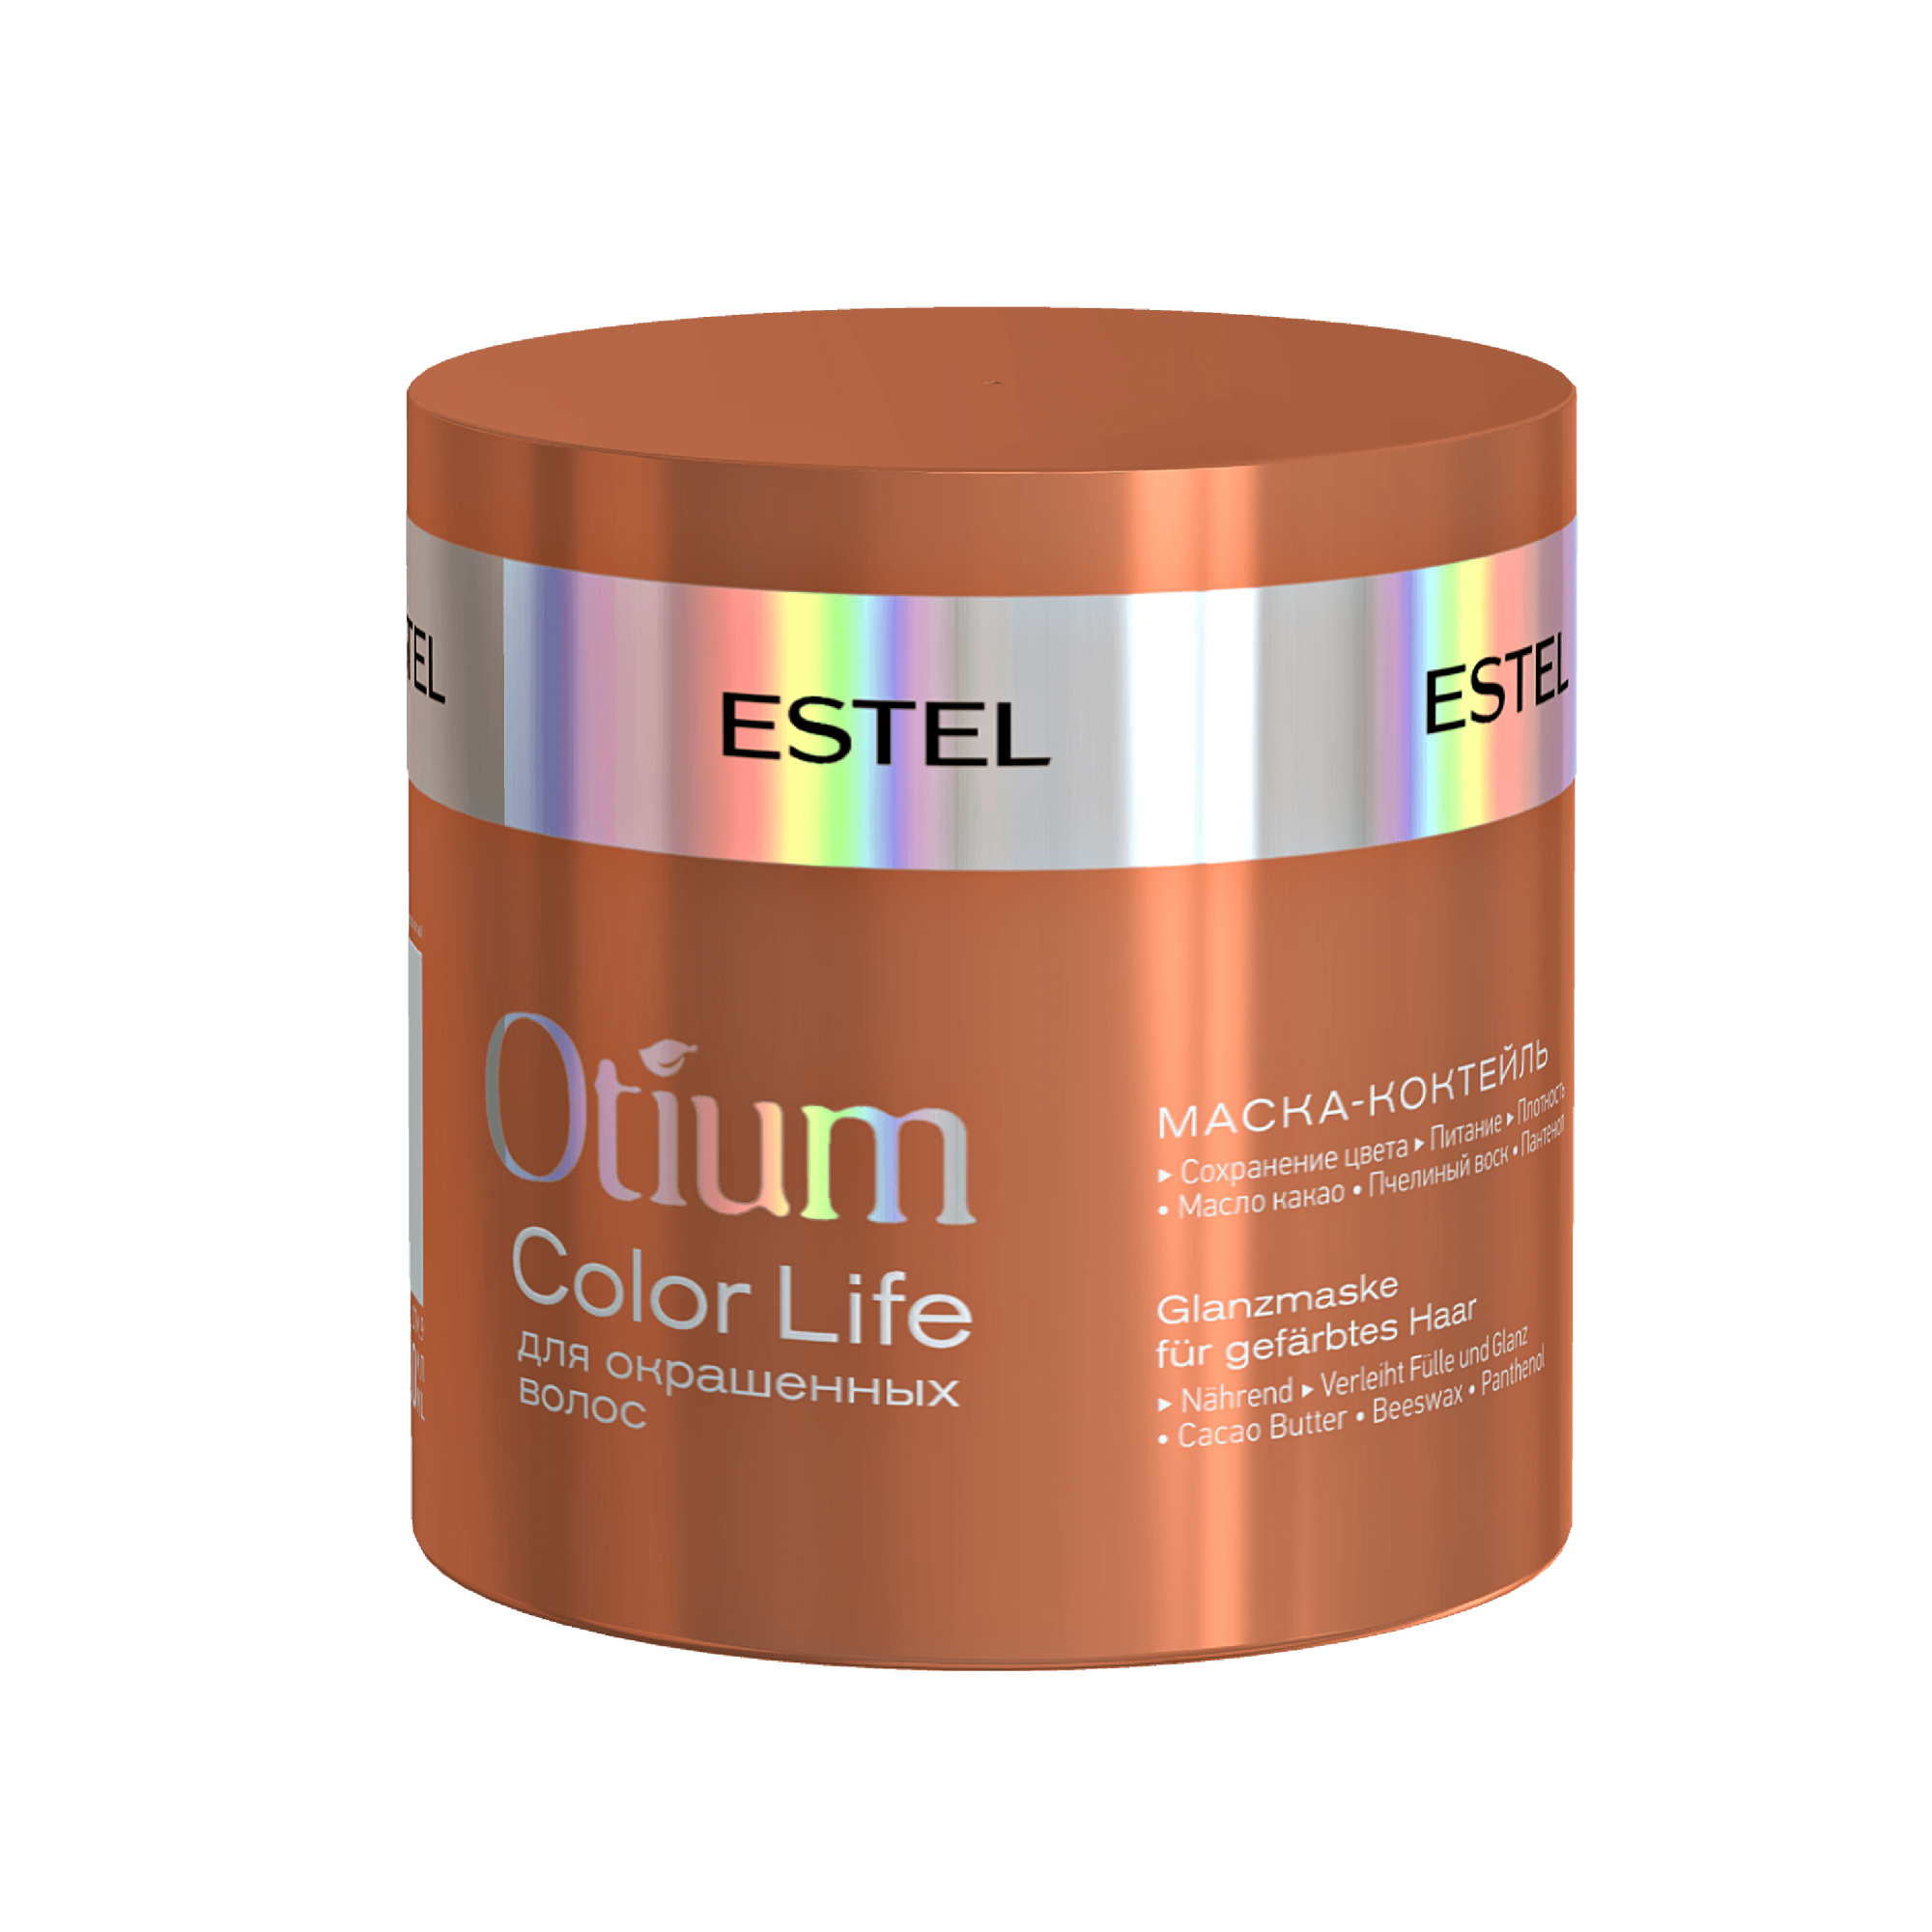 Маски эстель цена. Estel Otium Color Life маска. Estel Otium Color Life. Маска-коктейль для окрашенных волос Otium Color Life, 300 мл. Estel Otium Color Life набор.